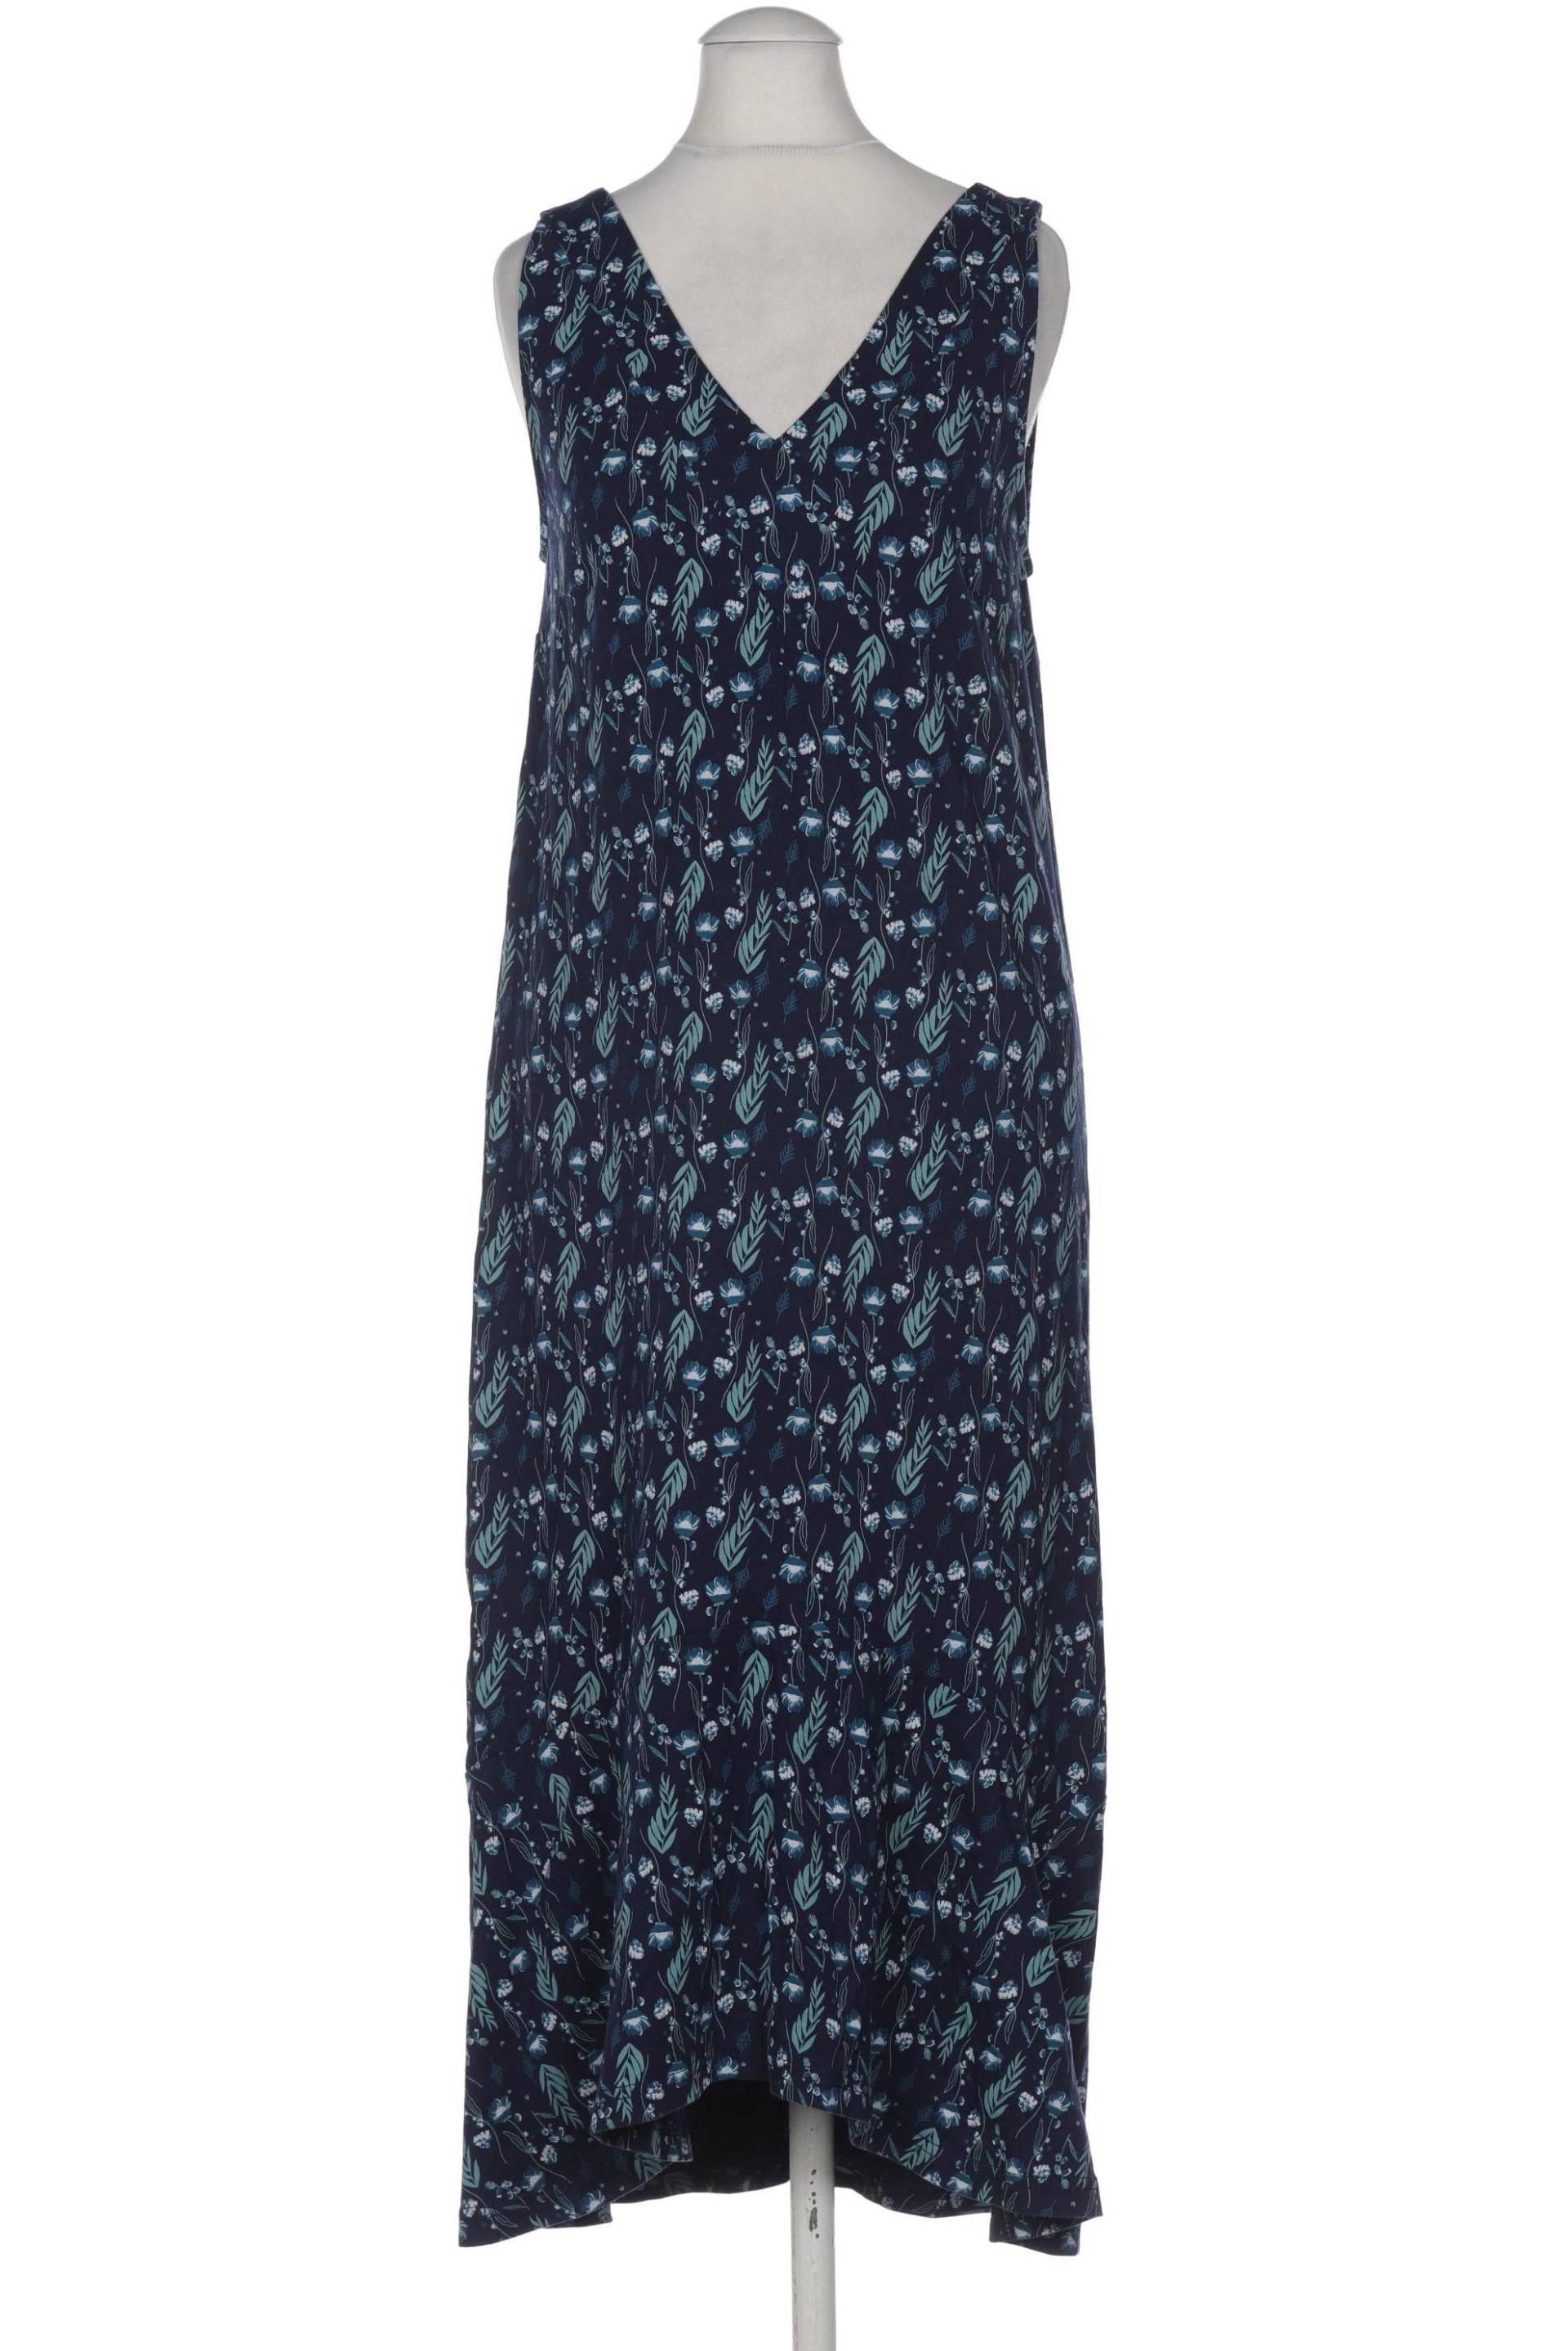 TRANQUILLO Damen Kleid, marineblau von TRANQUILLO